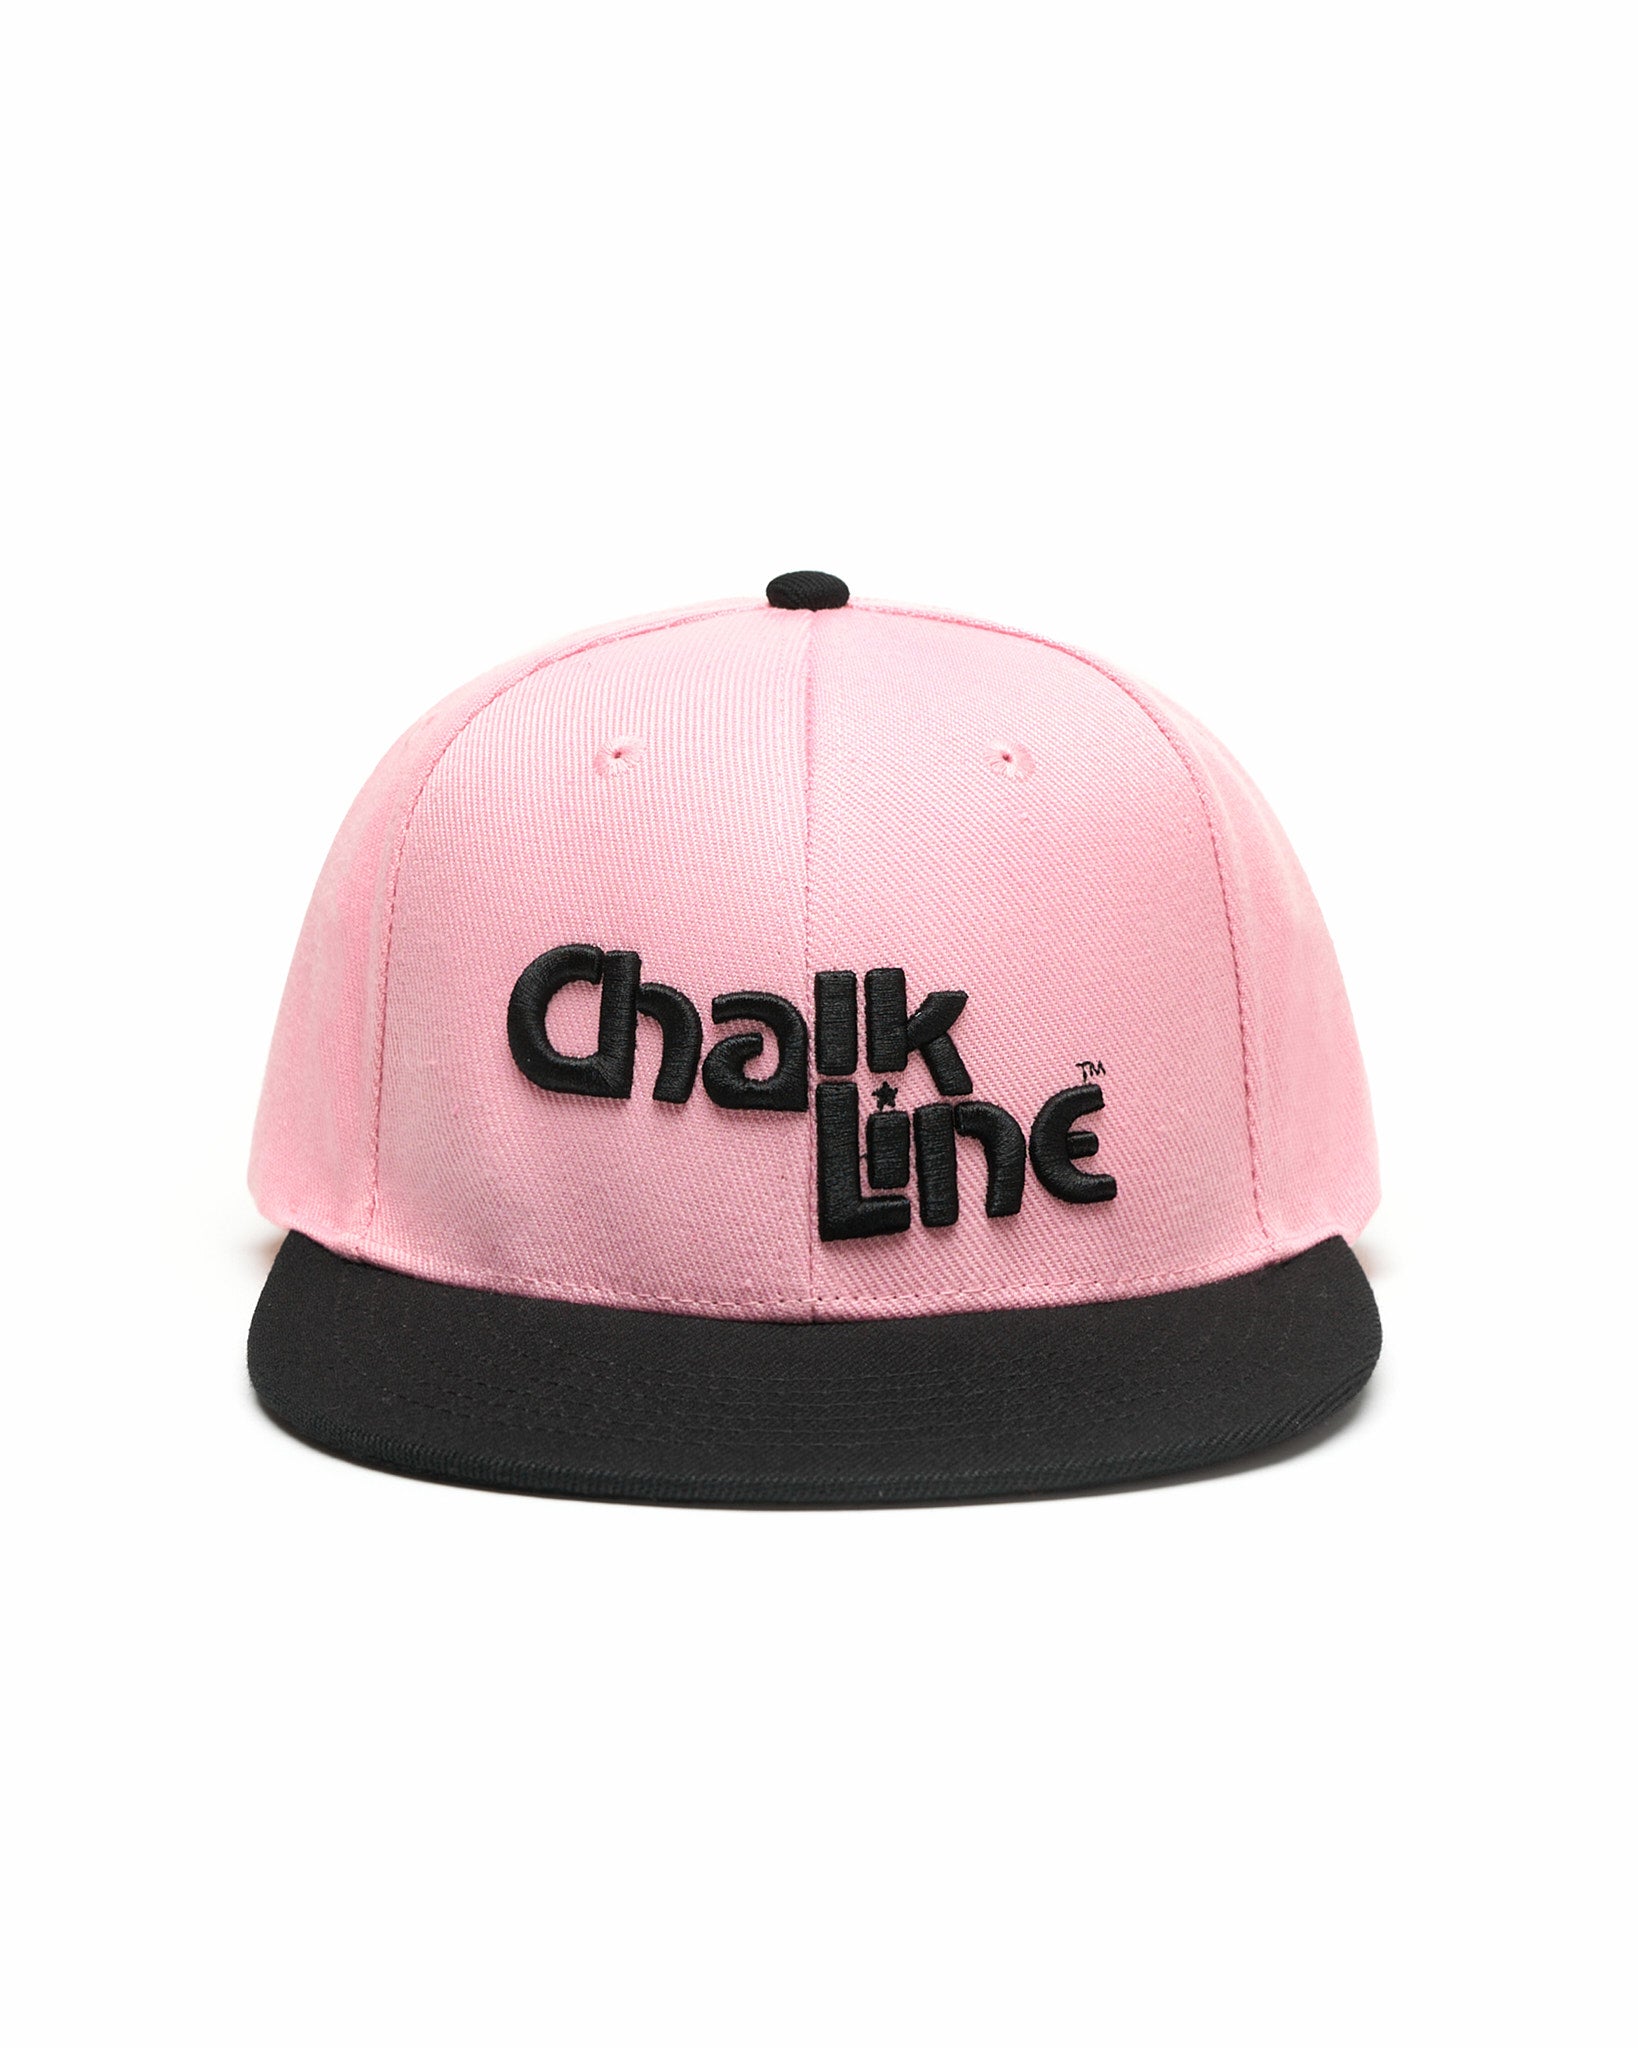 Chalk Line Pink & Black Snapback Hat